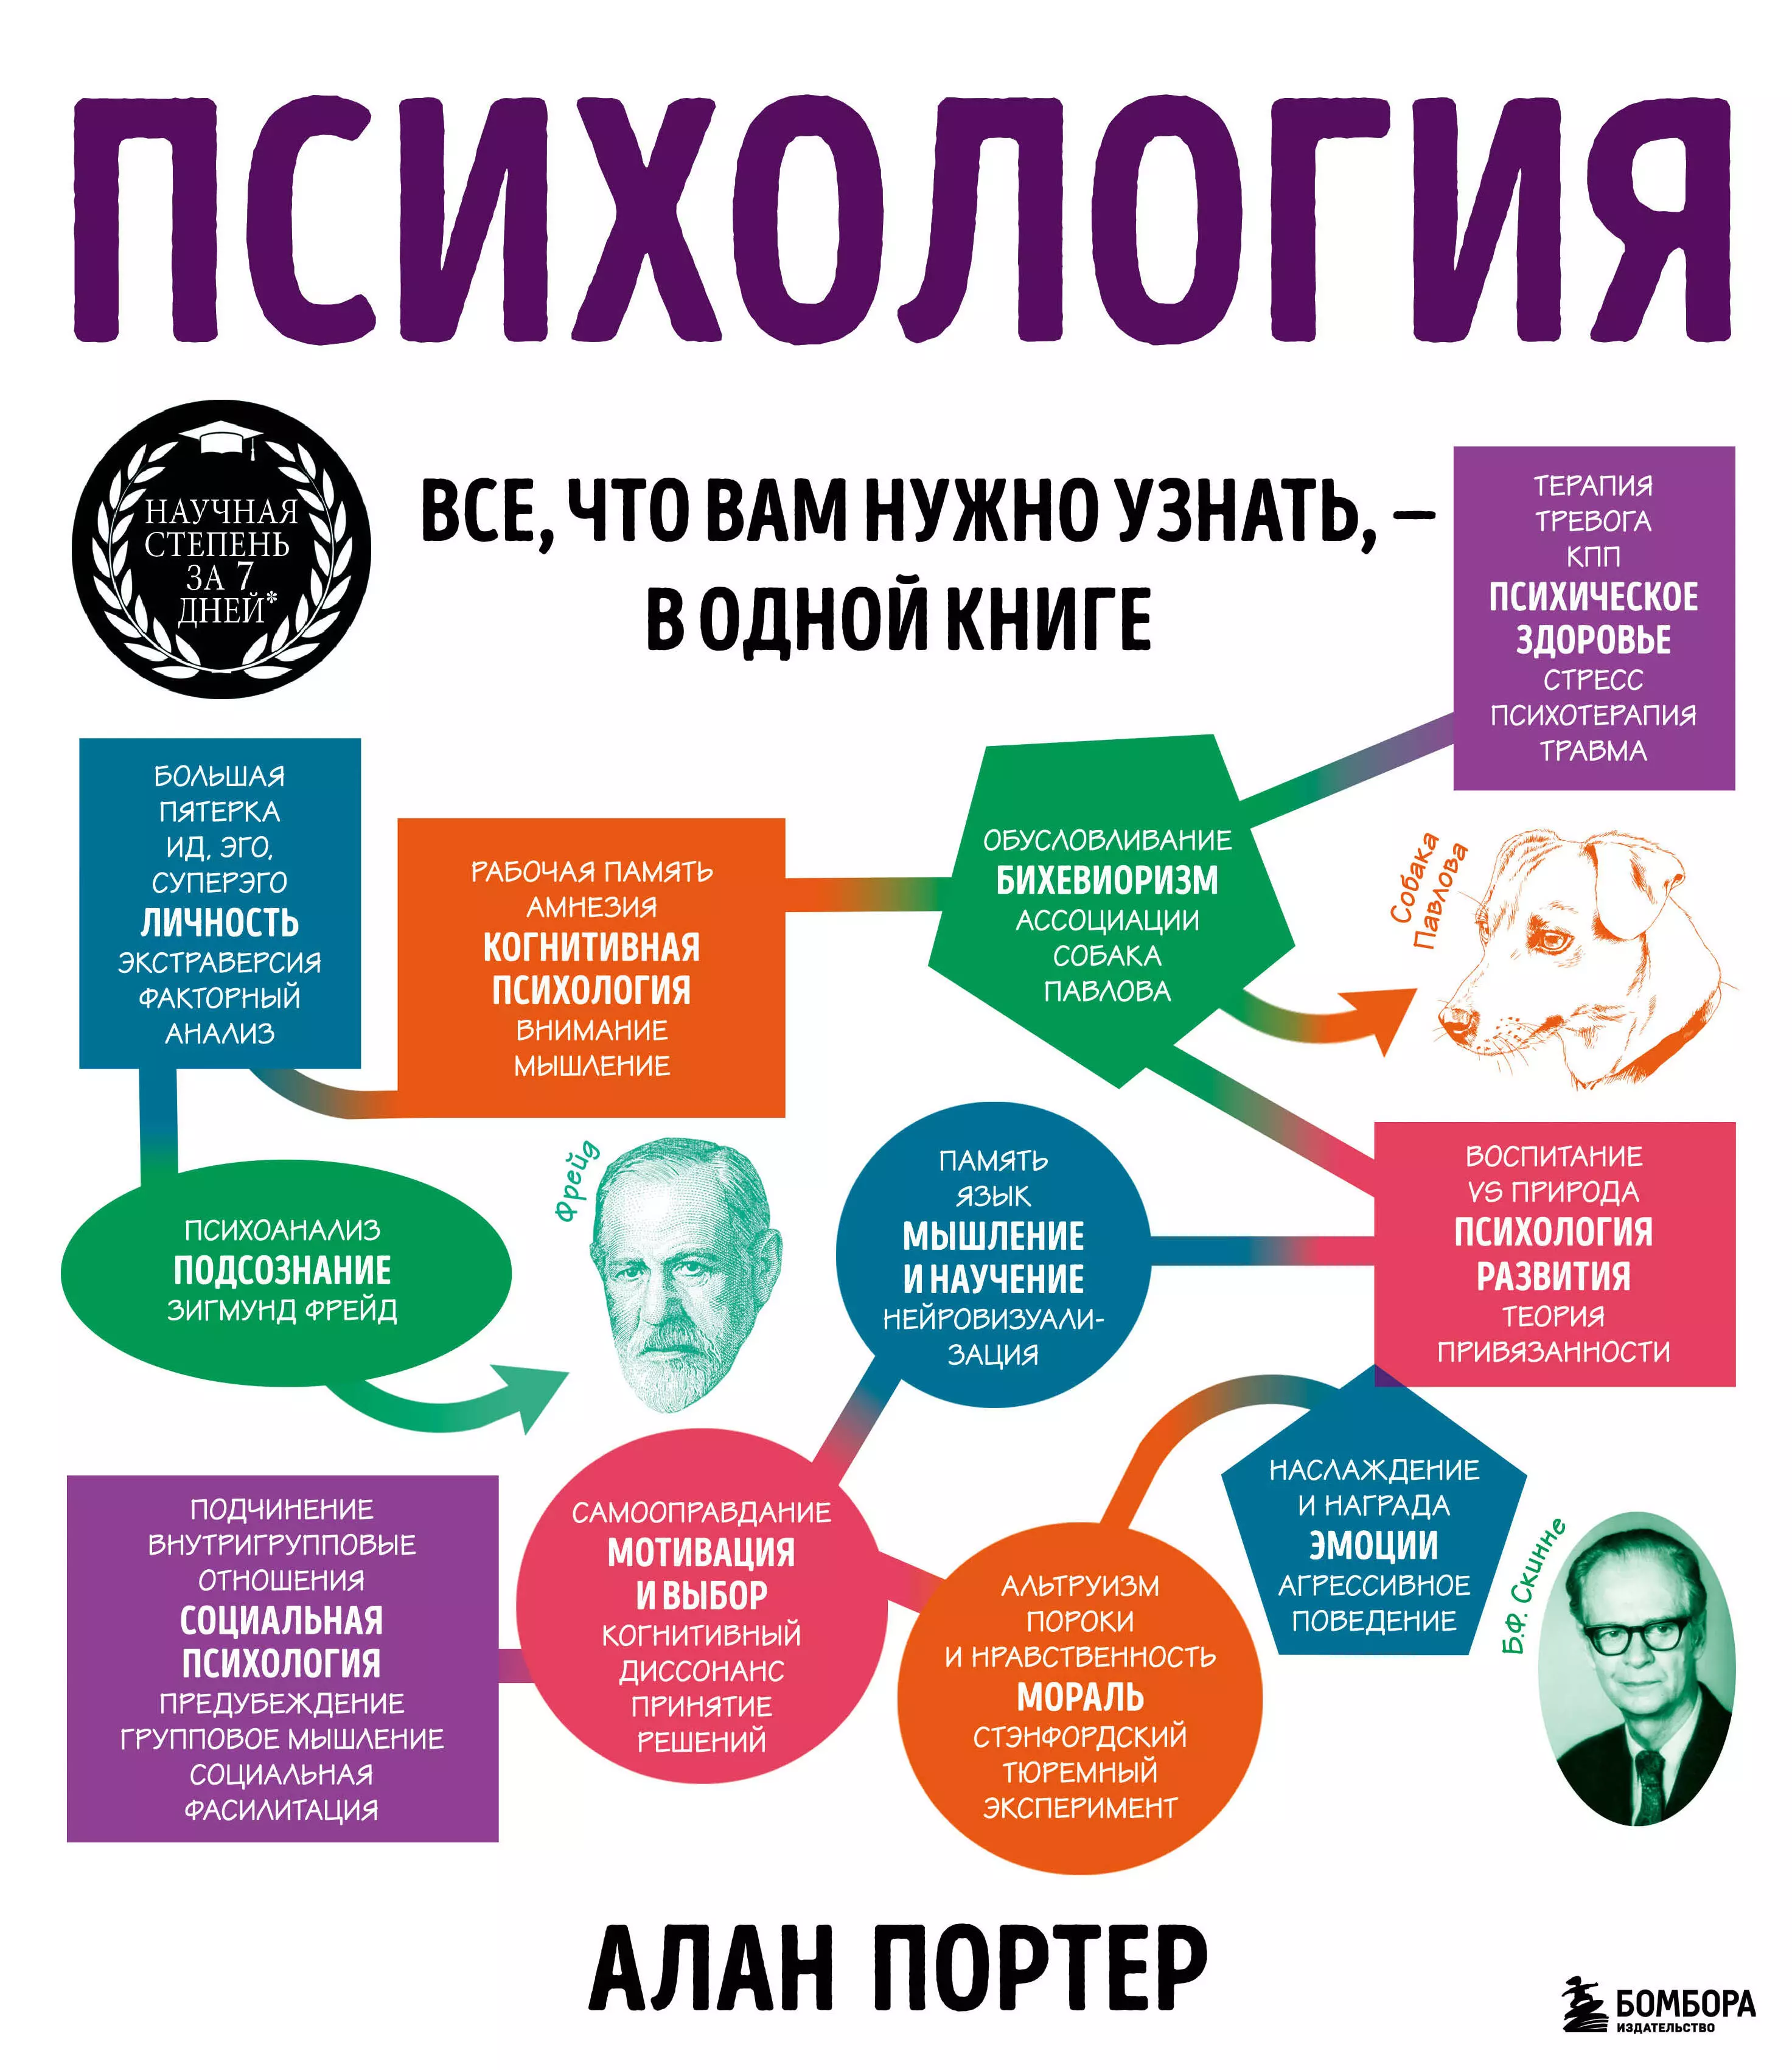 амелина русский язык все что вам нужно знать для егэ Психология. Все, что вам нужно знать, - в одной книге